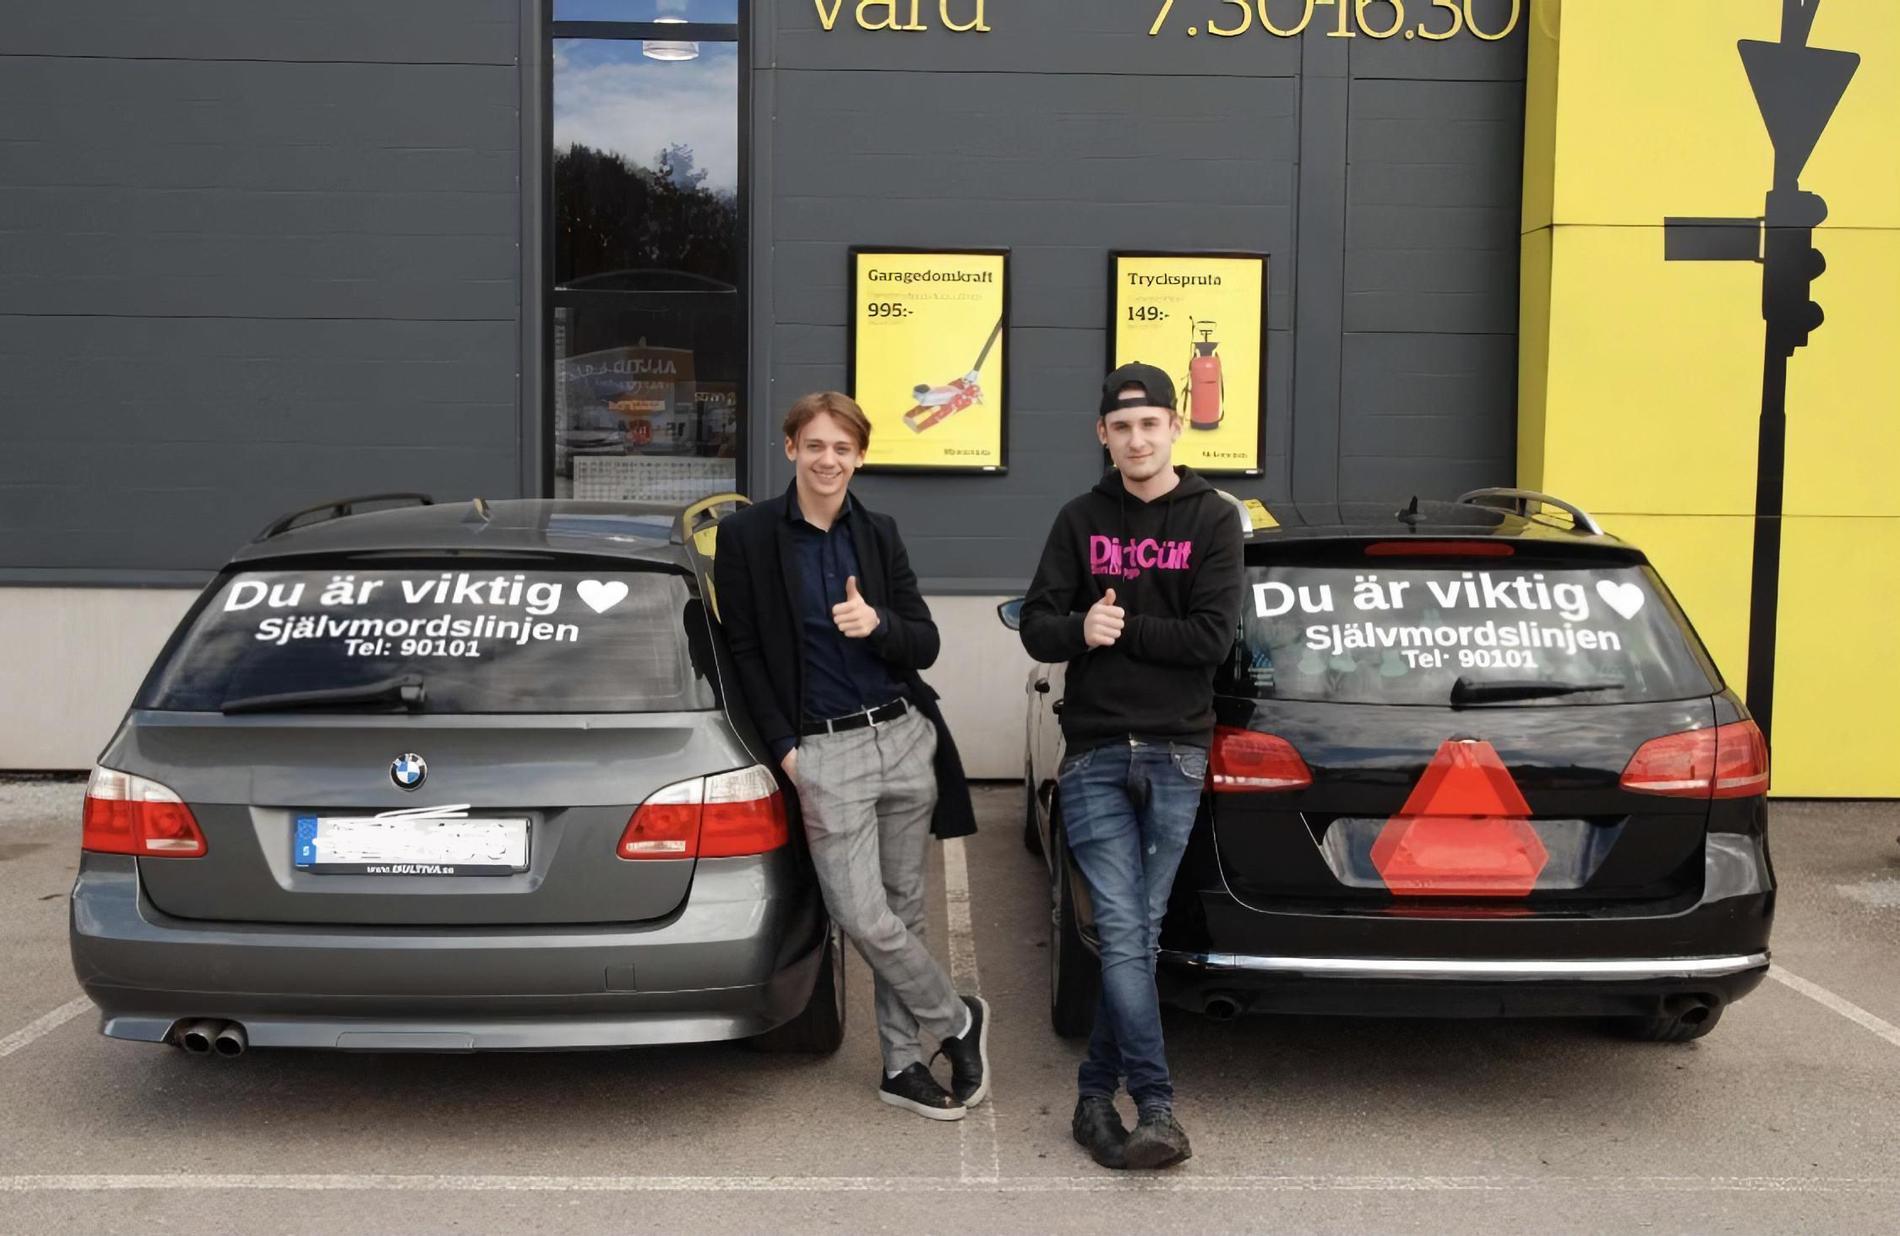 Oliver Gallo och Hampus Sandström sprider budskapet på sina bilar.